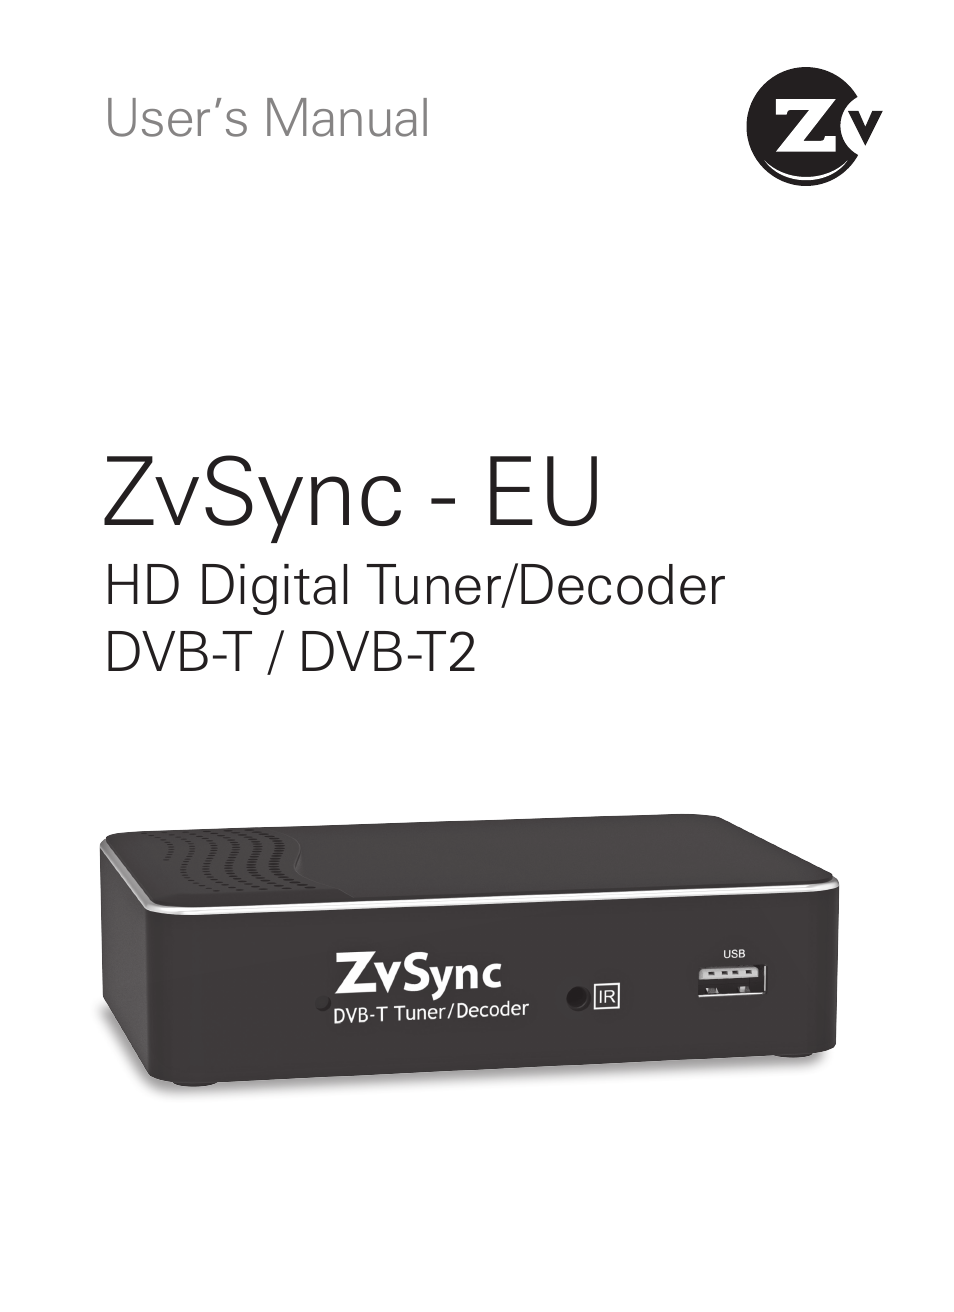 ZvSync (DVB-T/C)